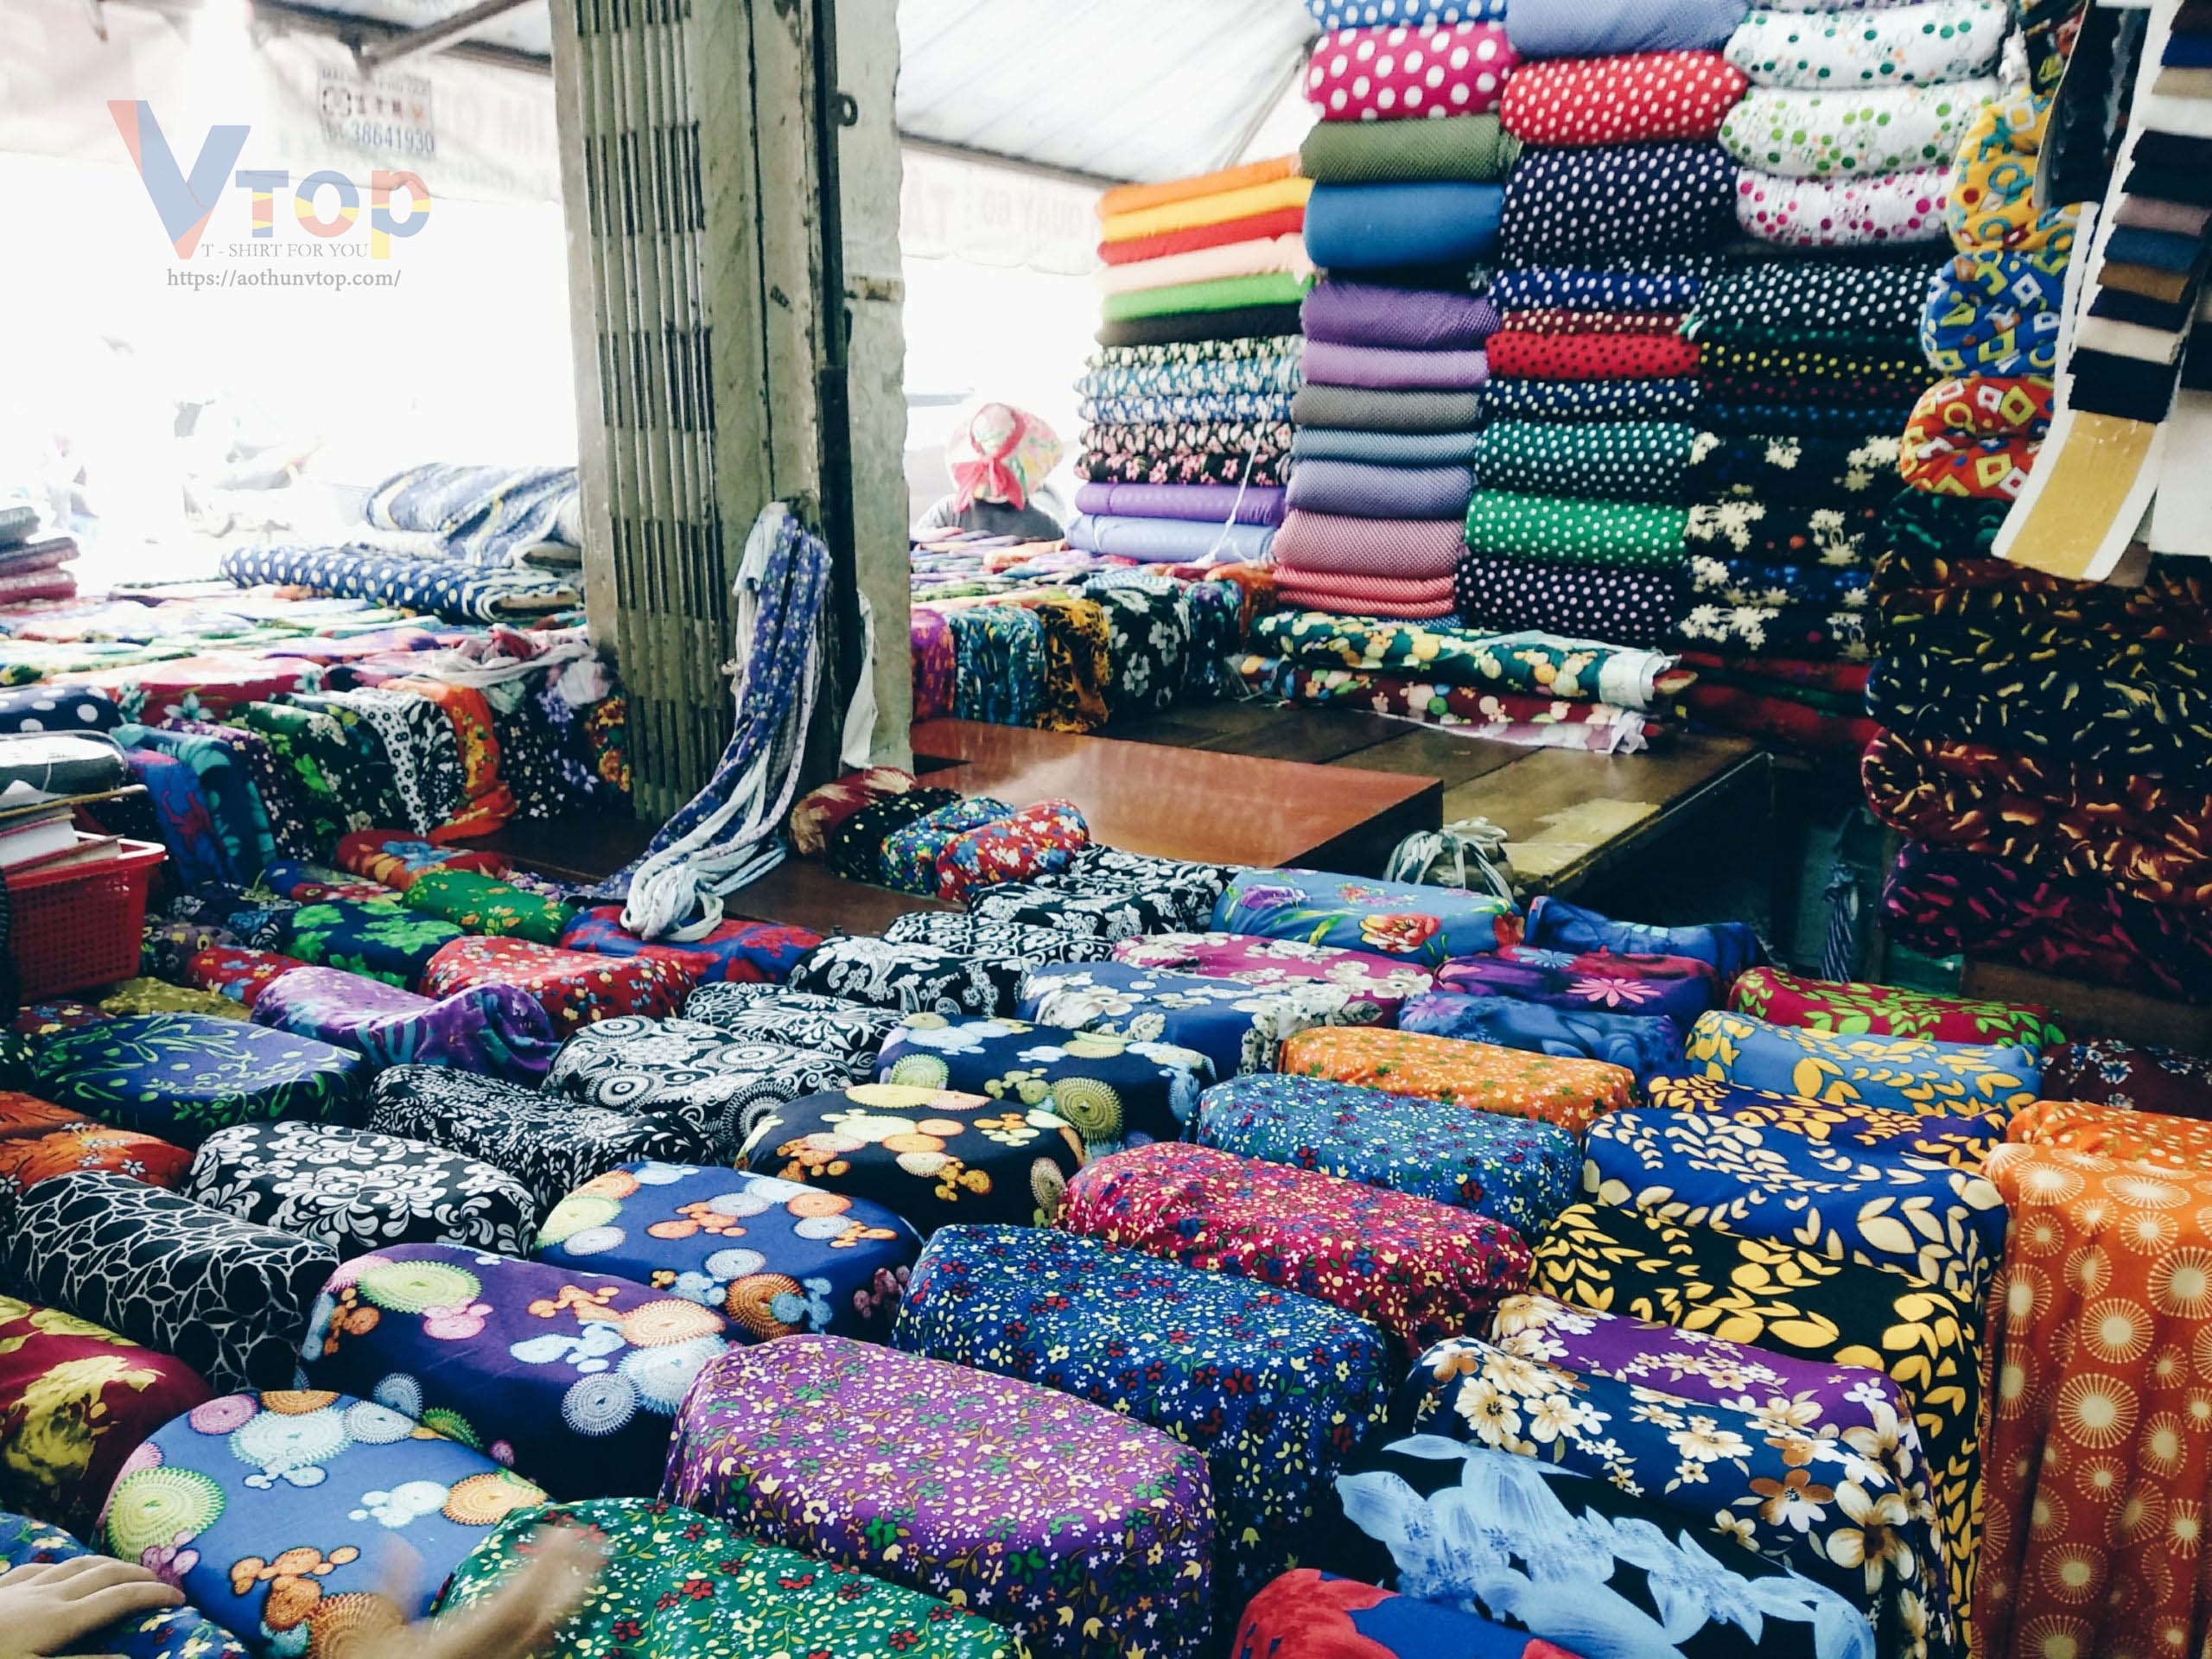 Mua vải ở chợ Trần Hữu Trang